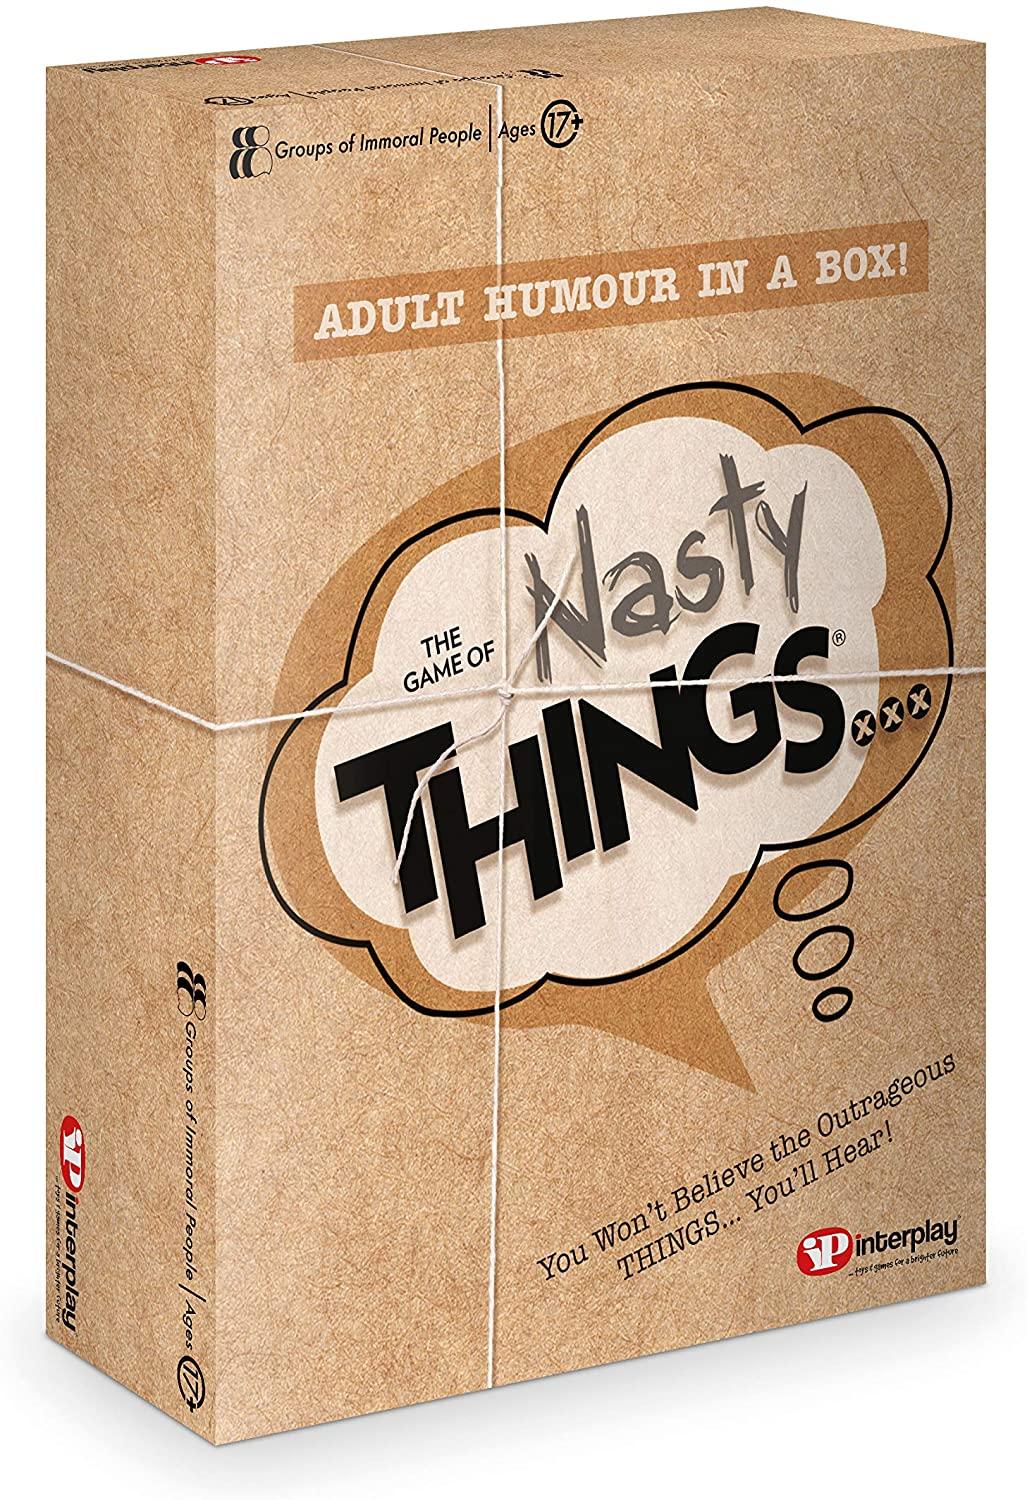 Nasty Things